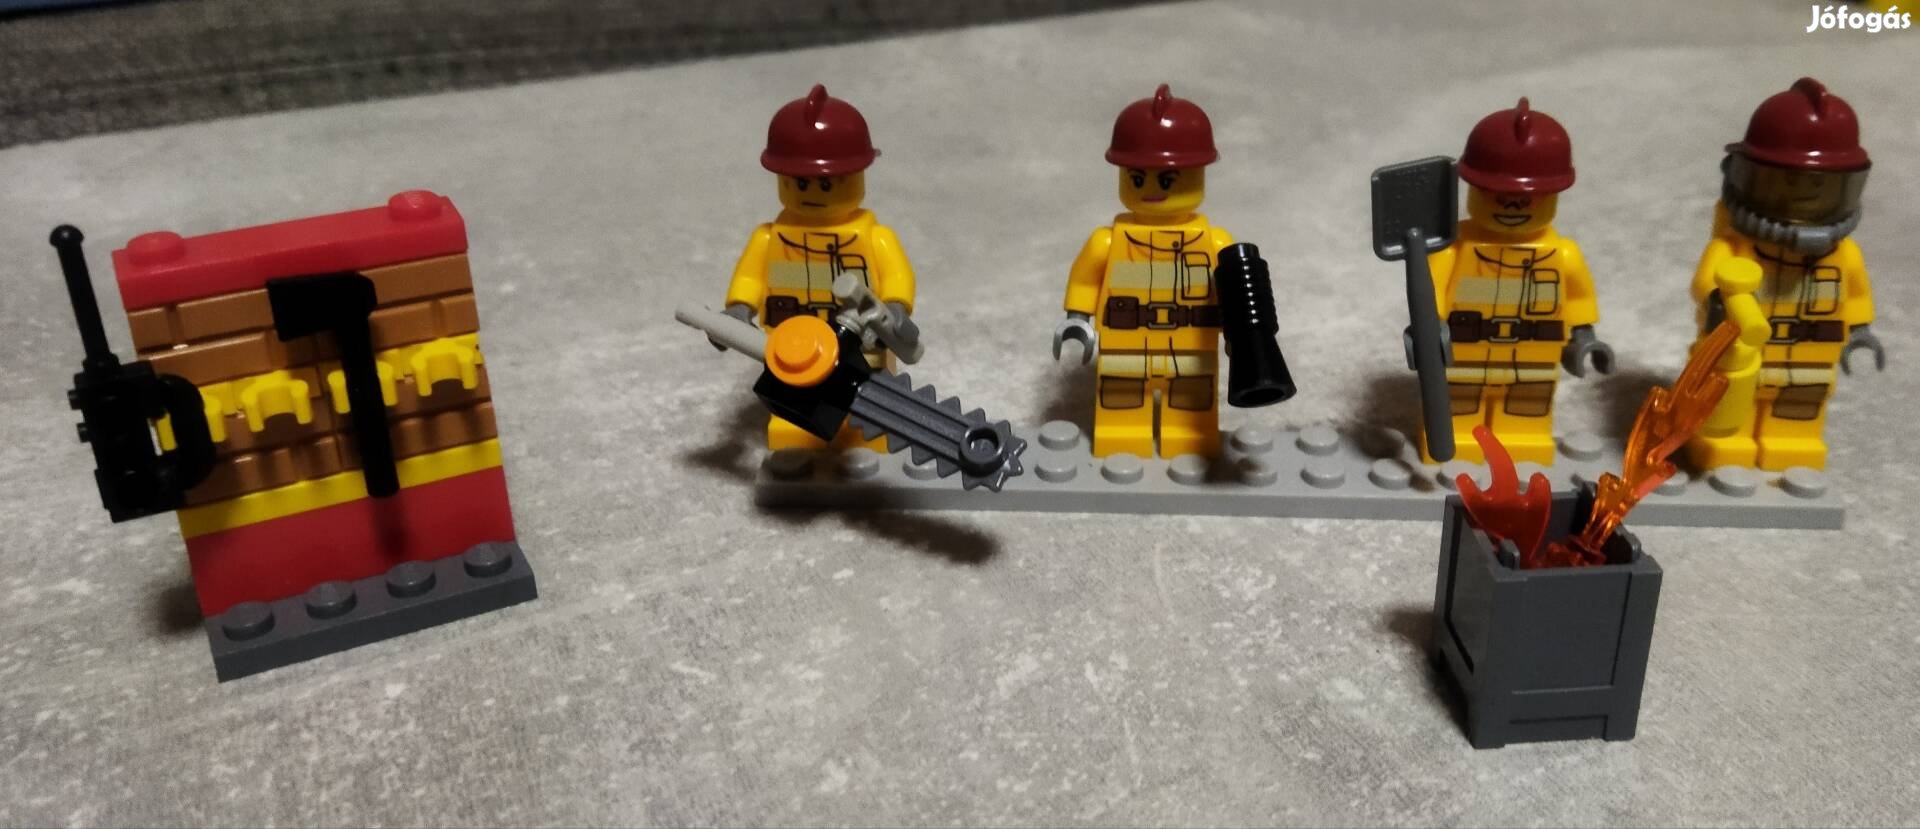 Lego City tűzoltó figurák 4db + kiegészítők 